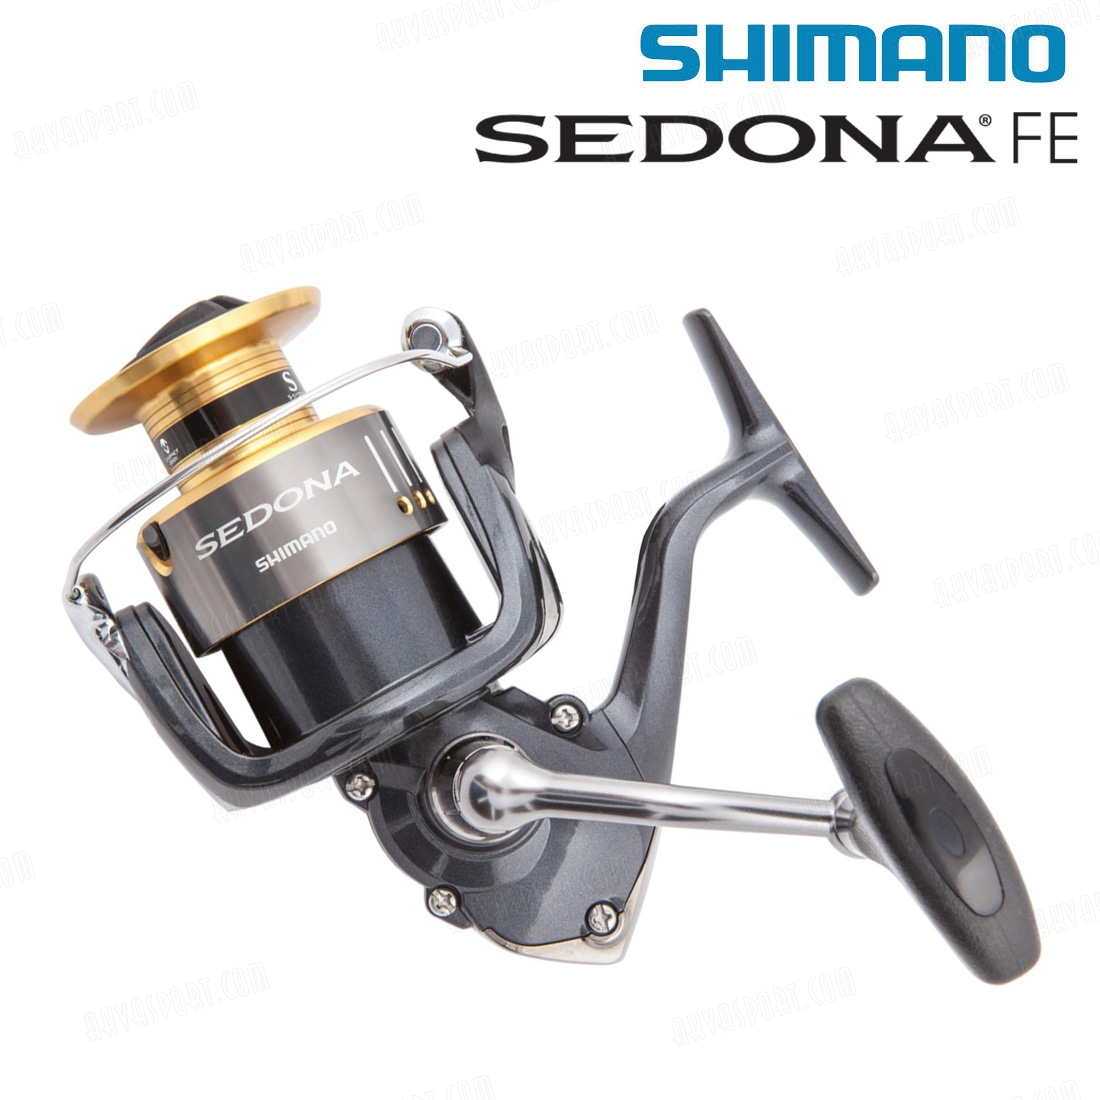 Shimano Sedona FE C3000 